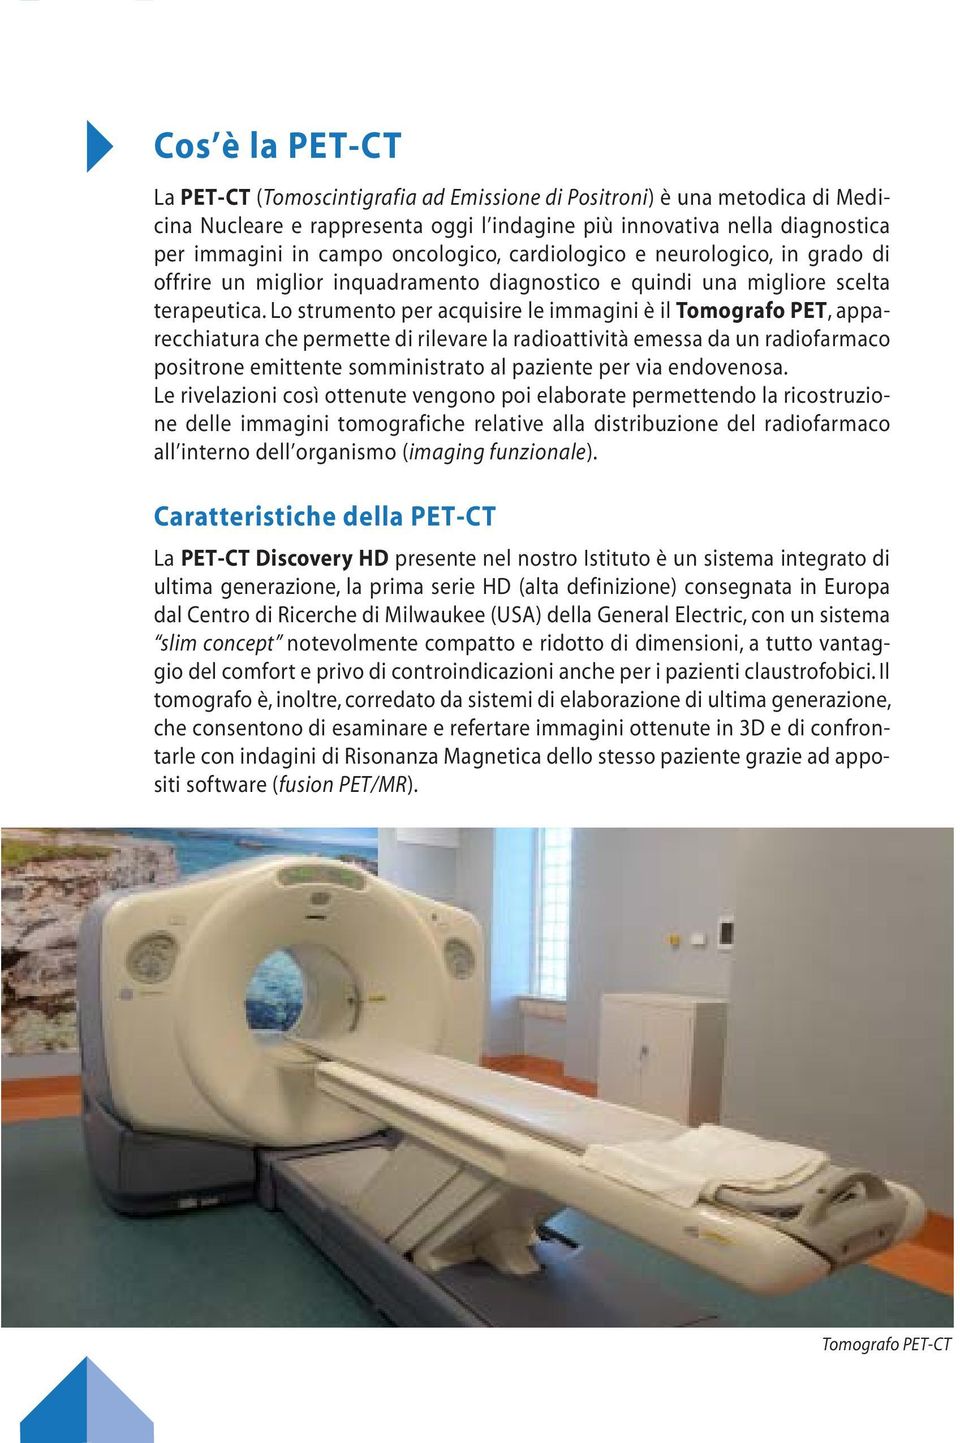 Lo strumento per acquisire le immagini è il Tomografo PET, apparecchiatura che permette di rilevare la radioattività emessa da un radiofarmaco positrone emittente somministrato al paziente per via